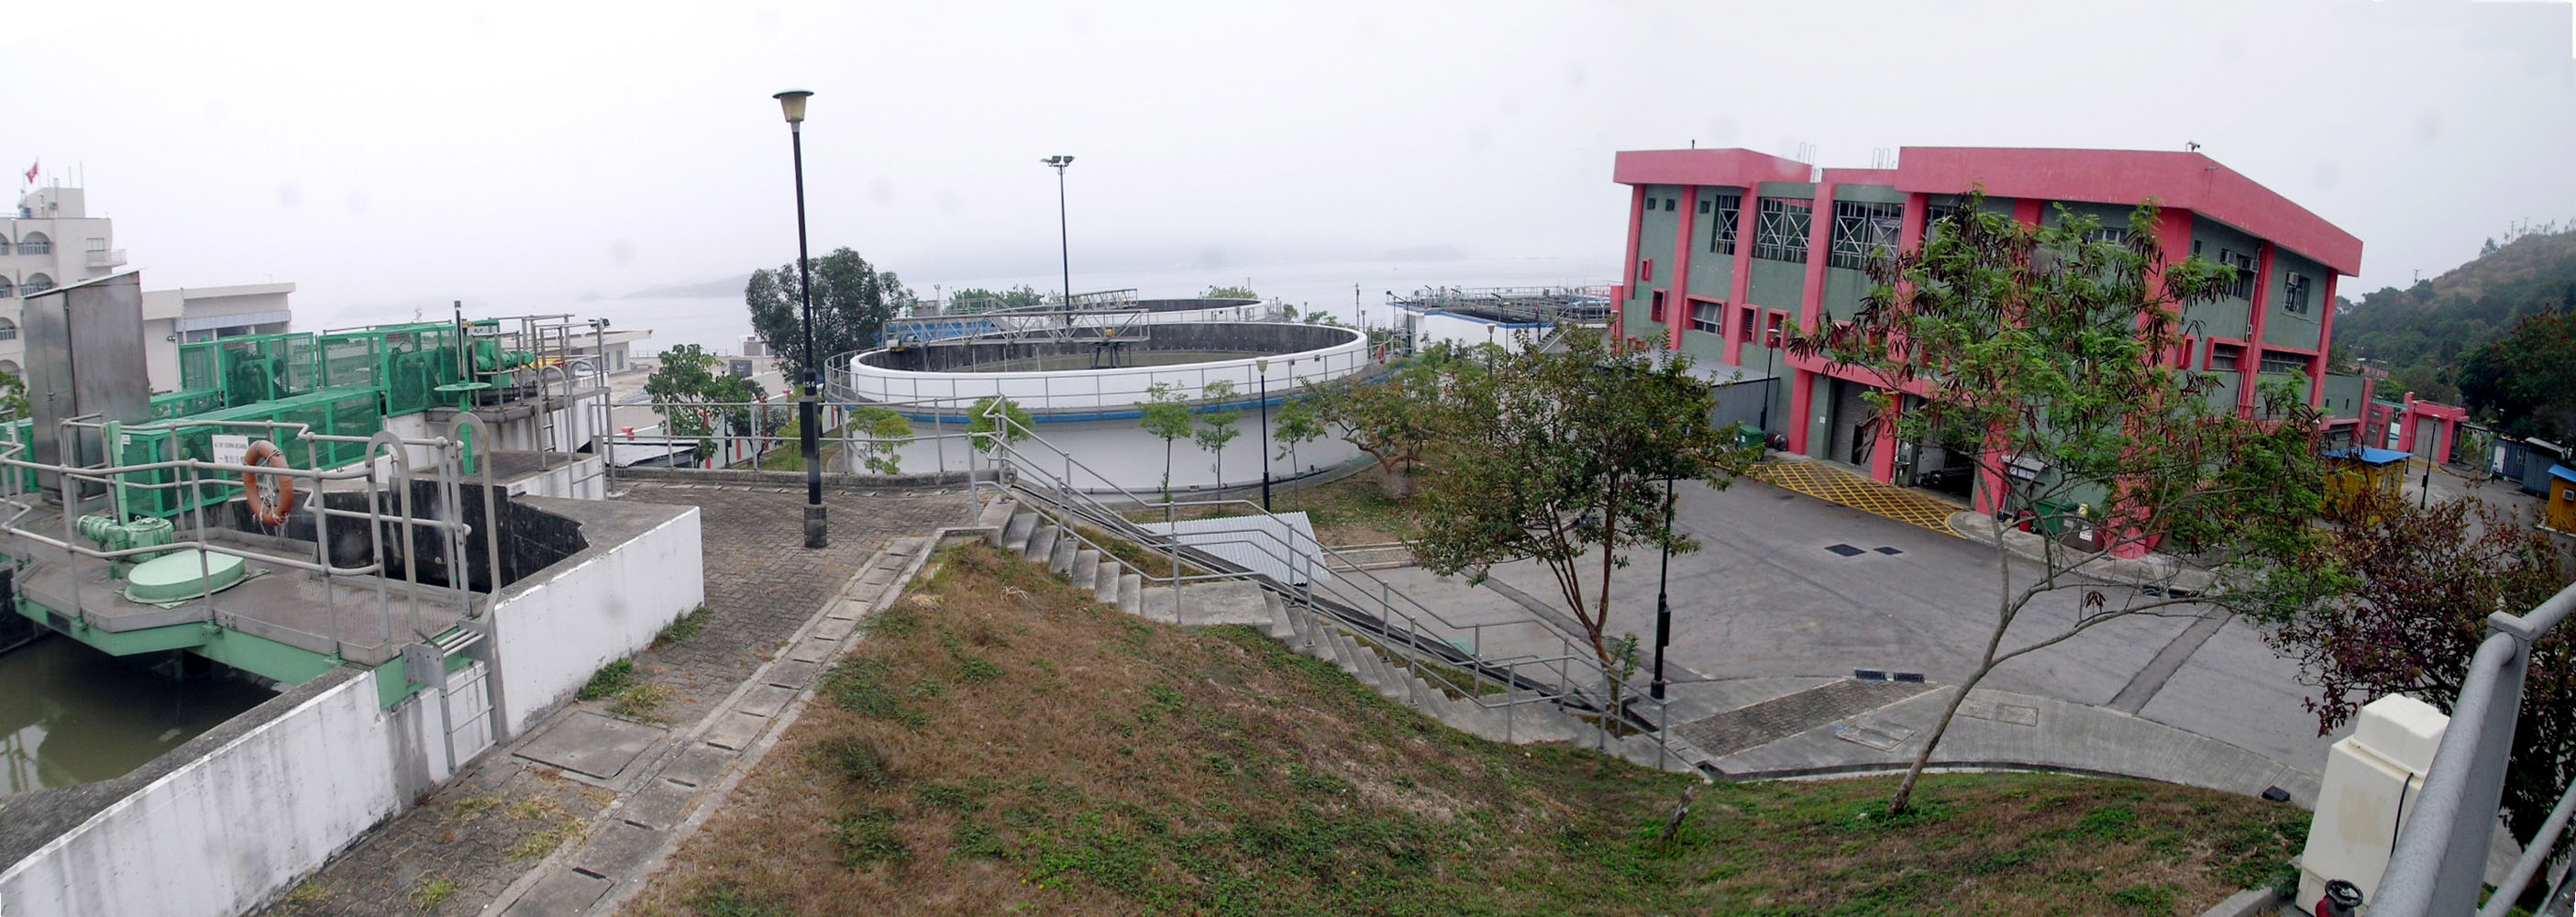 相片 1: 西貢污水處理廠